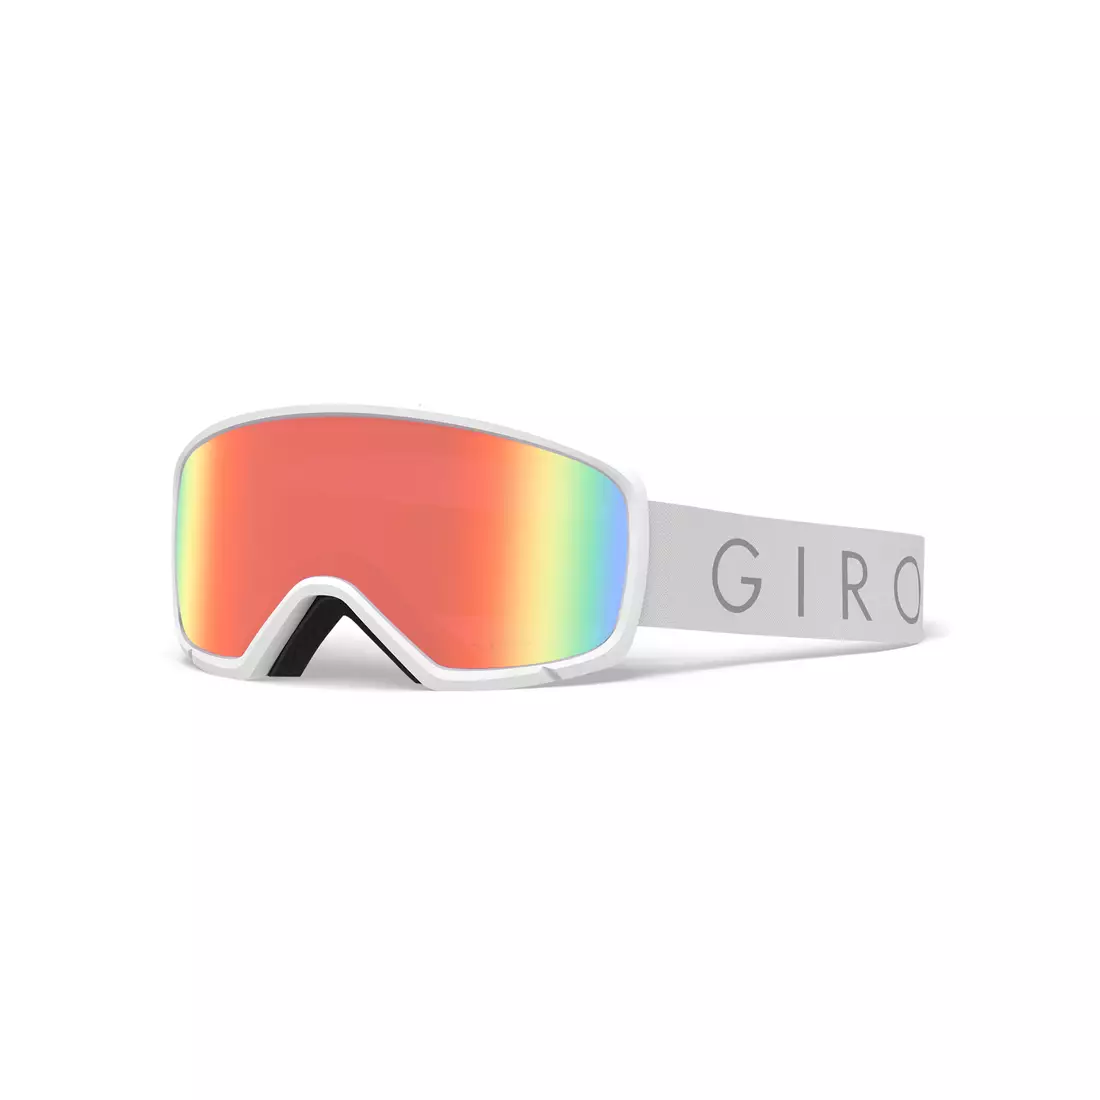 Ski / snowboard goggles GIRO RINGO WHITE CORE LIGHT GR-7108790